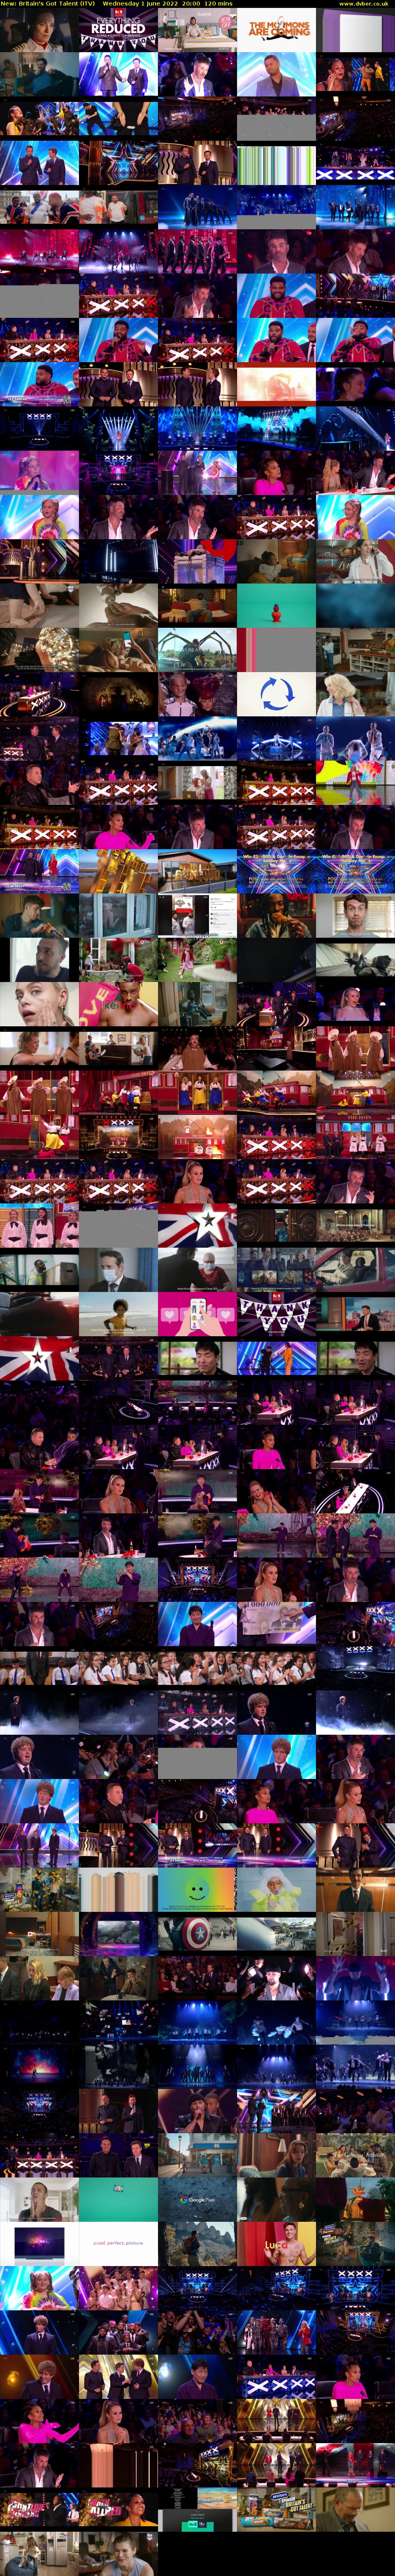 Britain's Got Talent (ITV) Wednesday 1 June 2022 20:00 - 22:00